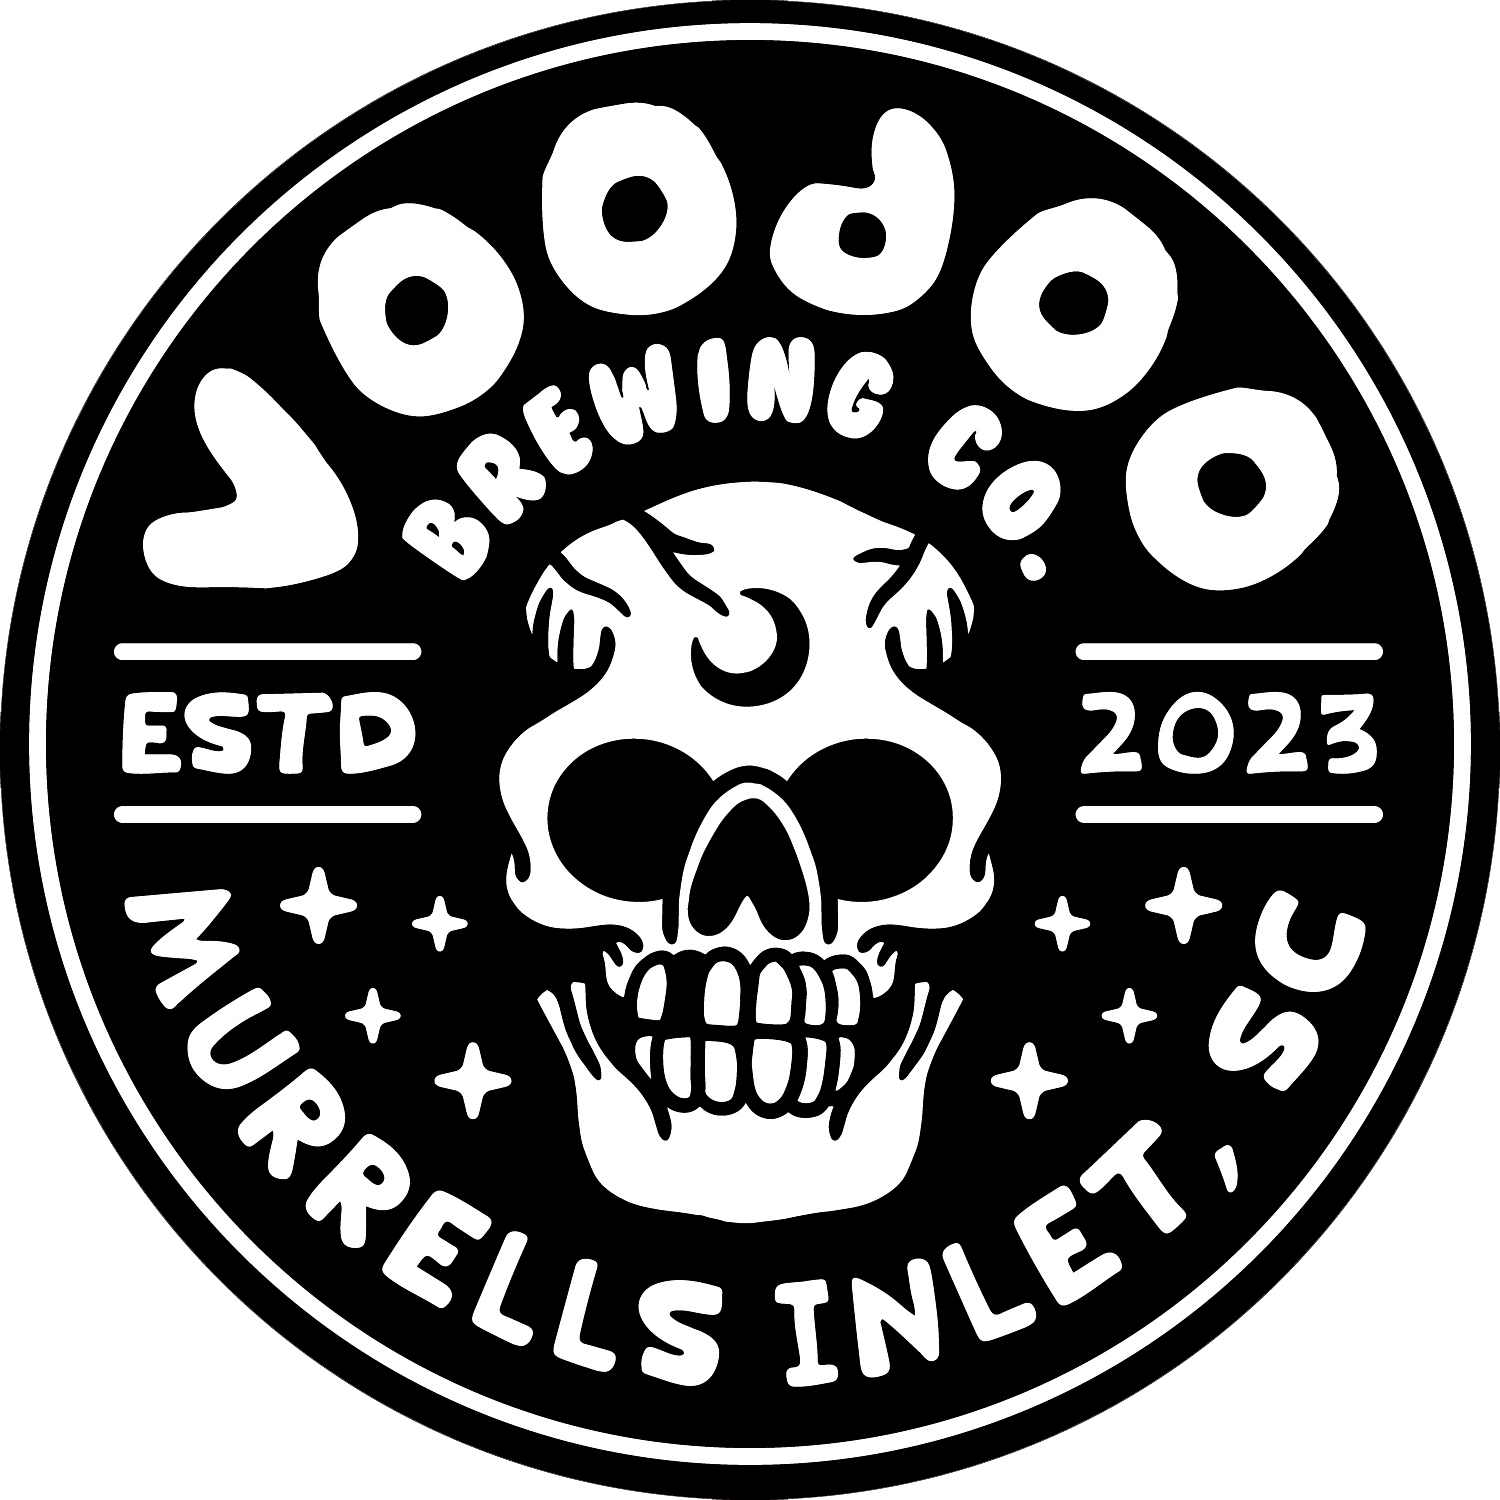 Voodoo Brewing Co Murrells Inlet, SC